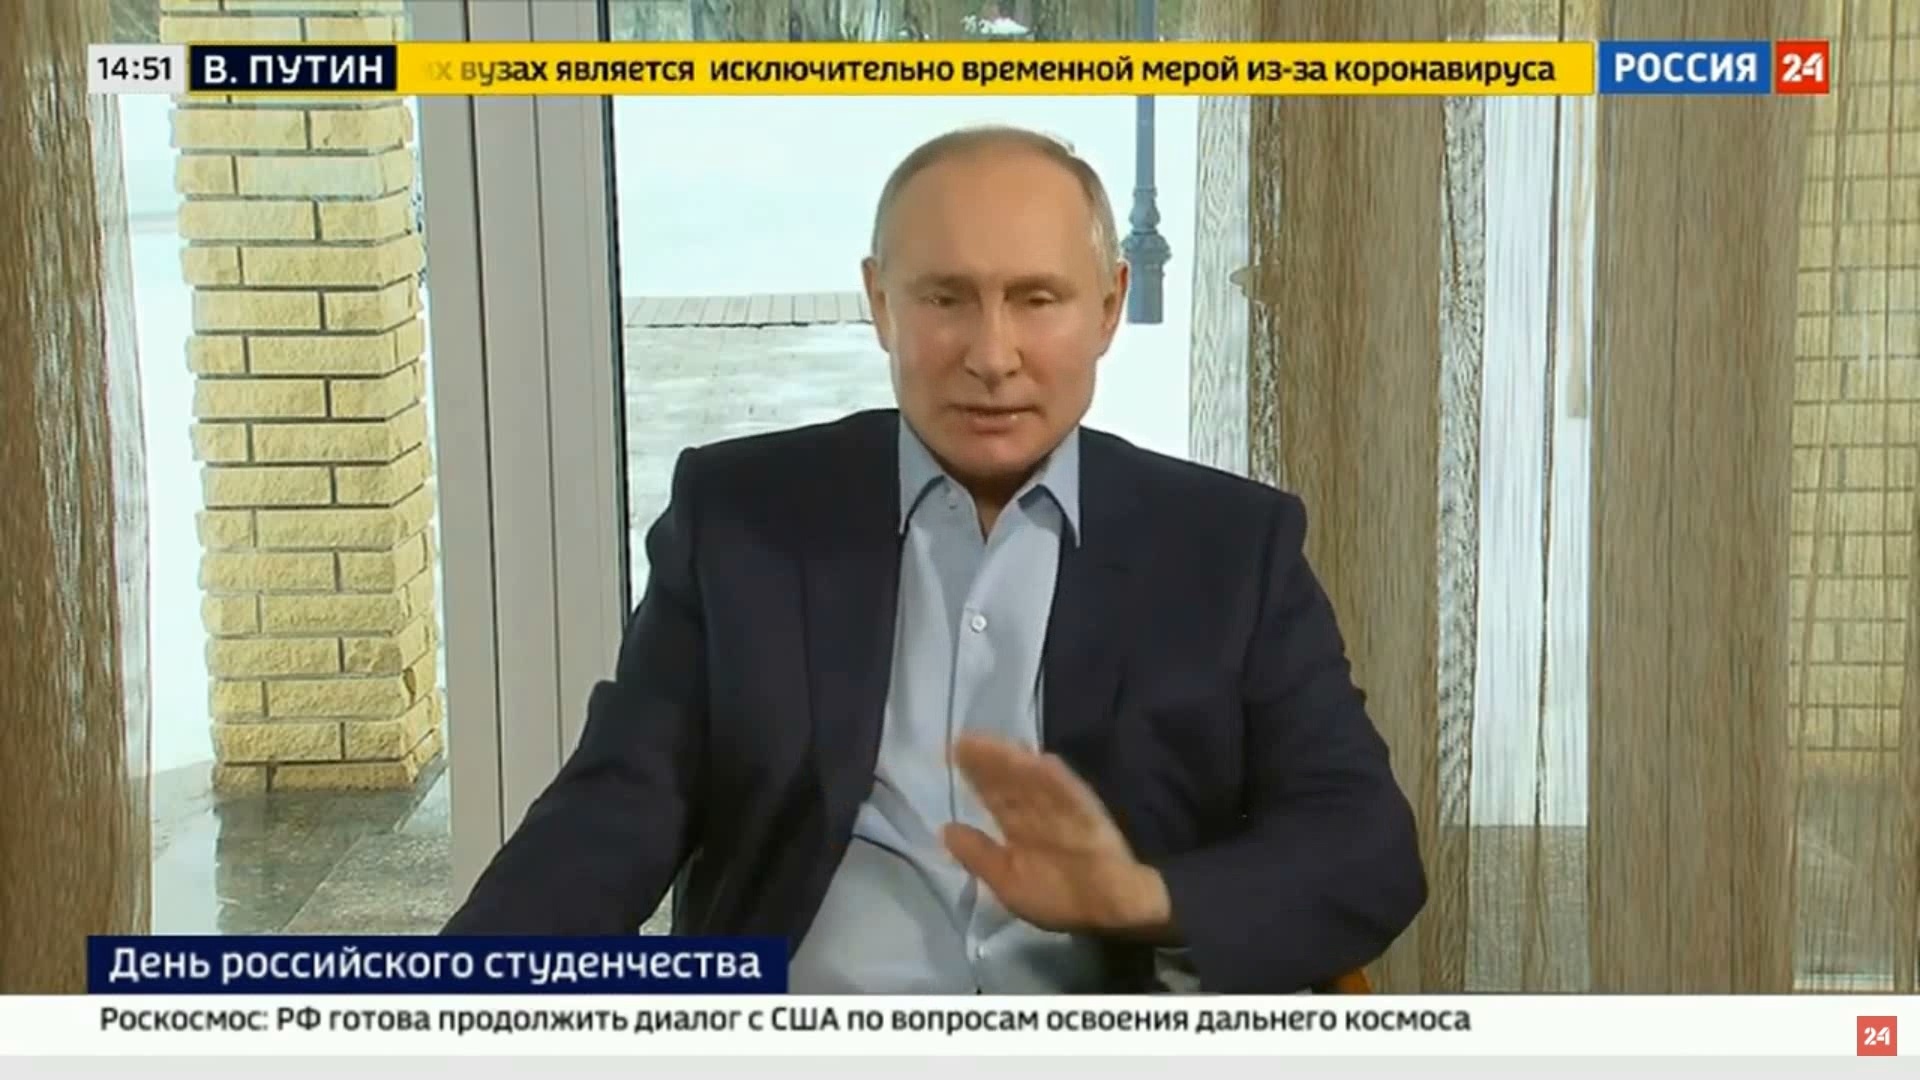 Владимир Путин ответил студенту из Уфы на вопрос о дворце в Геленджике